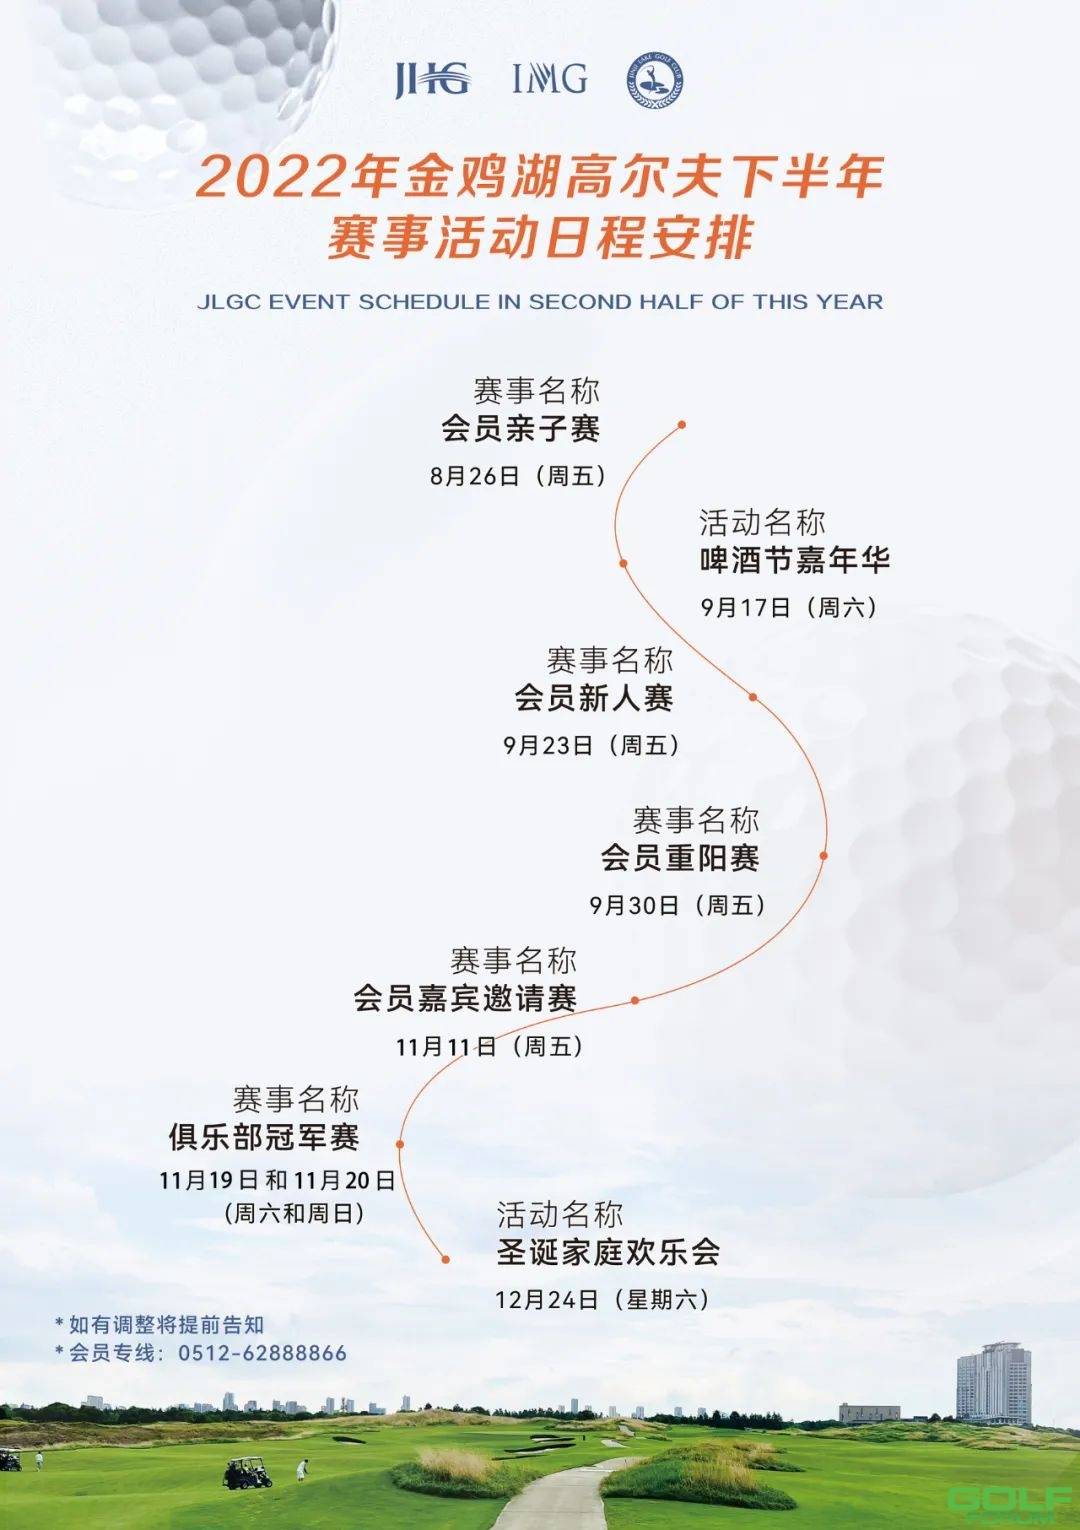 温馨提示|2022金鸡湖高尔夫冠军赛即将开赛